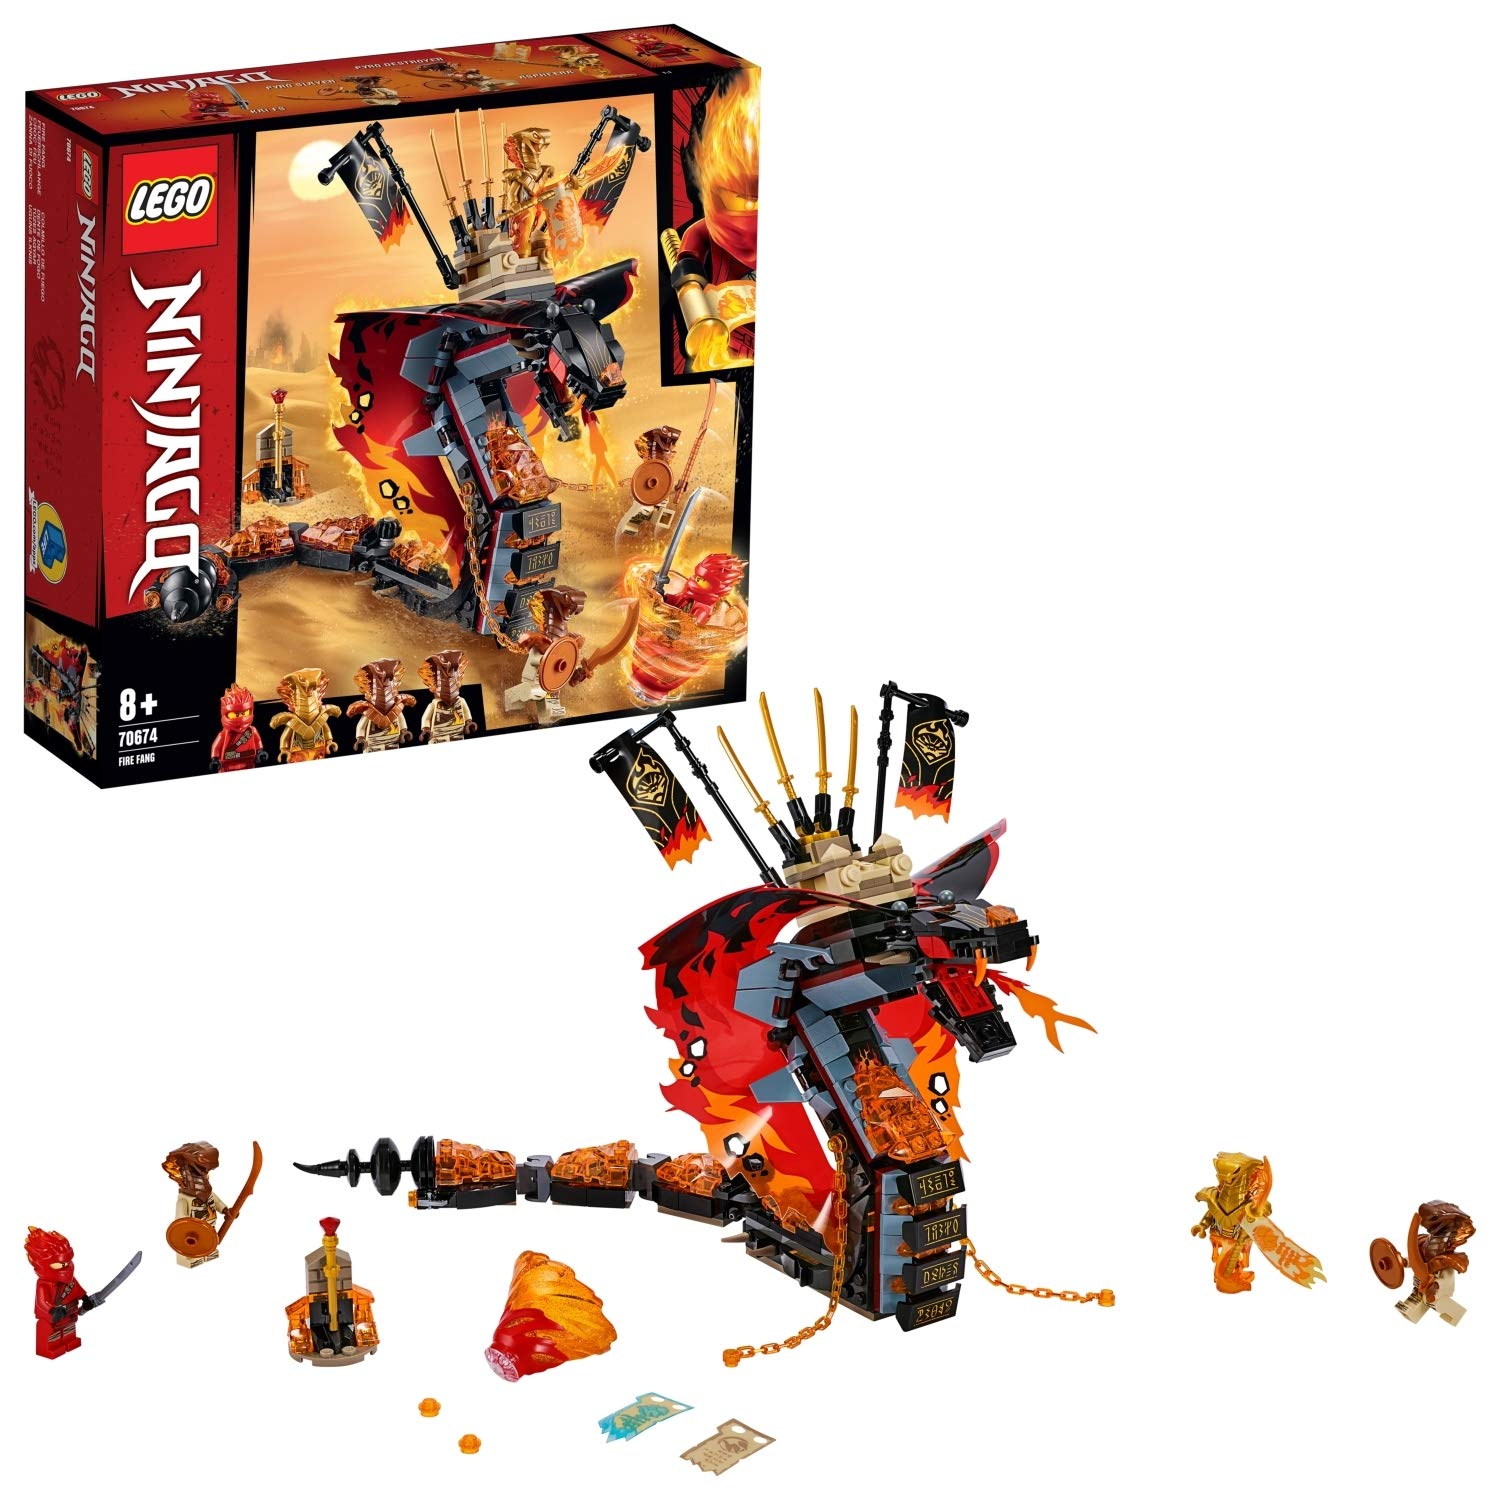 LEGO NINJAGO 70674 Fire Fang Snake Toy for Kids – Rắn Lửa Khổng Lồ Đại Chiến Ninja